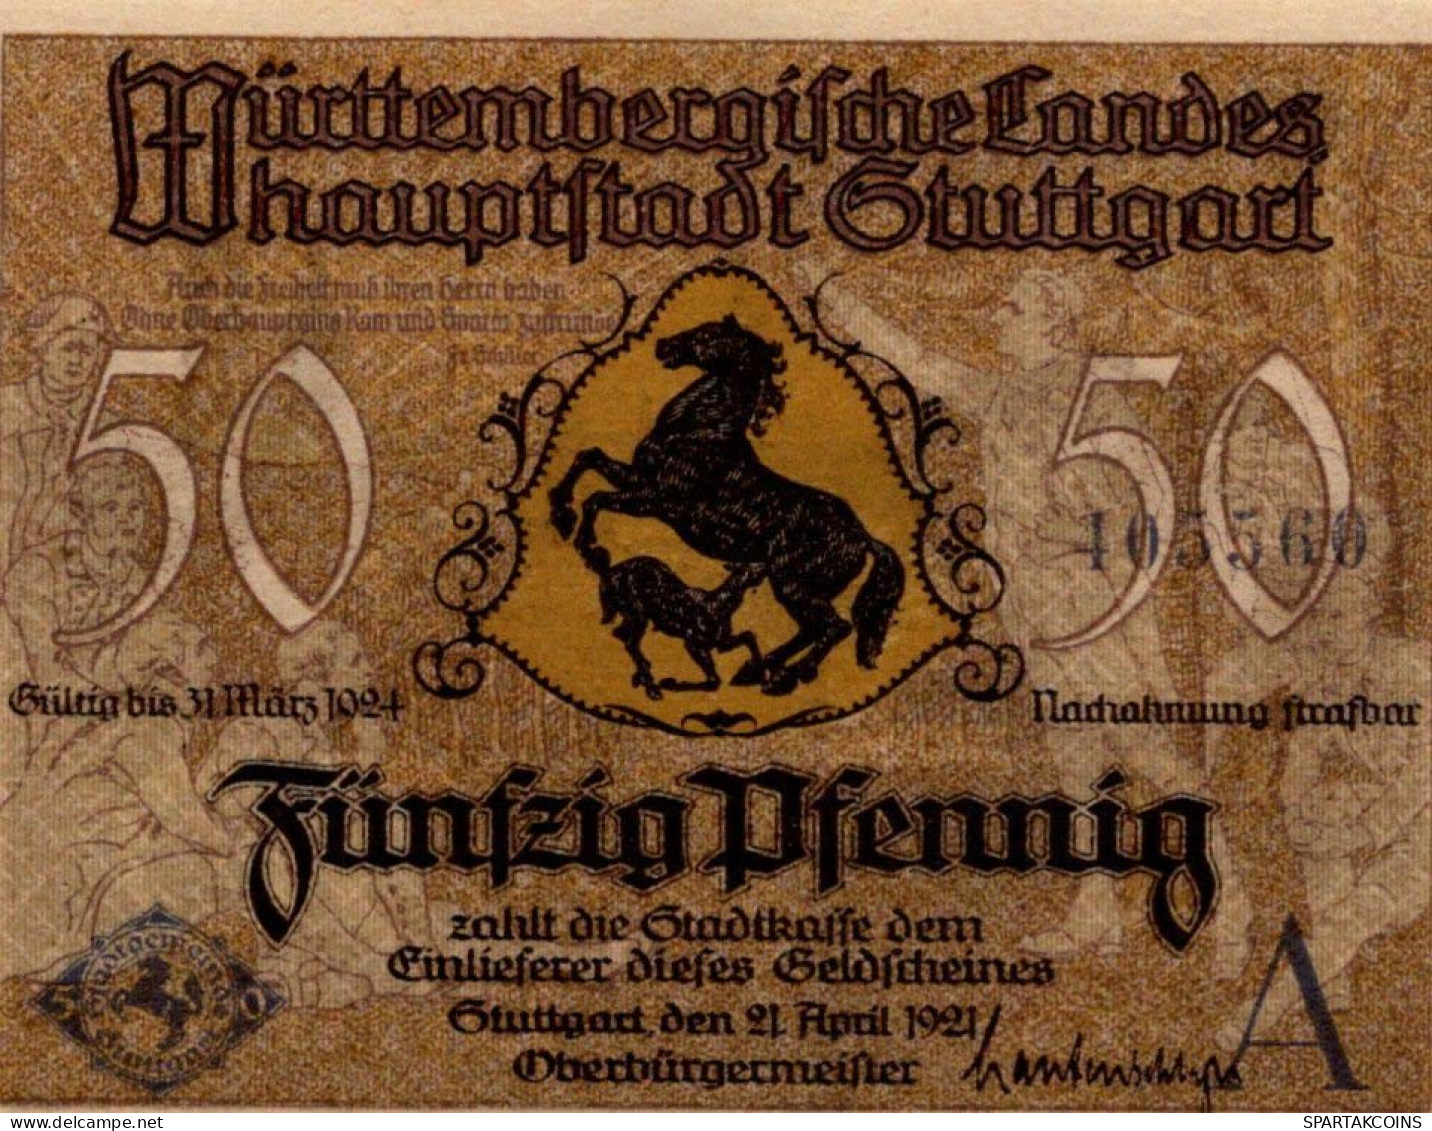 50 PFENNIG 1921 Stadt STUTTGART Württemberg UNC DEUTSCHLAND Notgeld #PC416 - [11] Emissions Locales